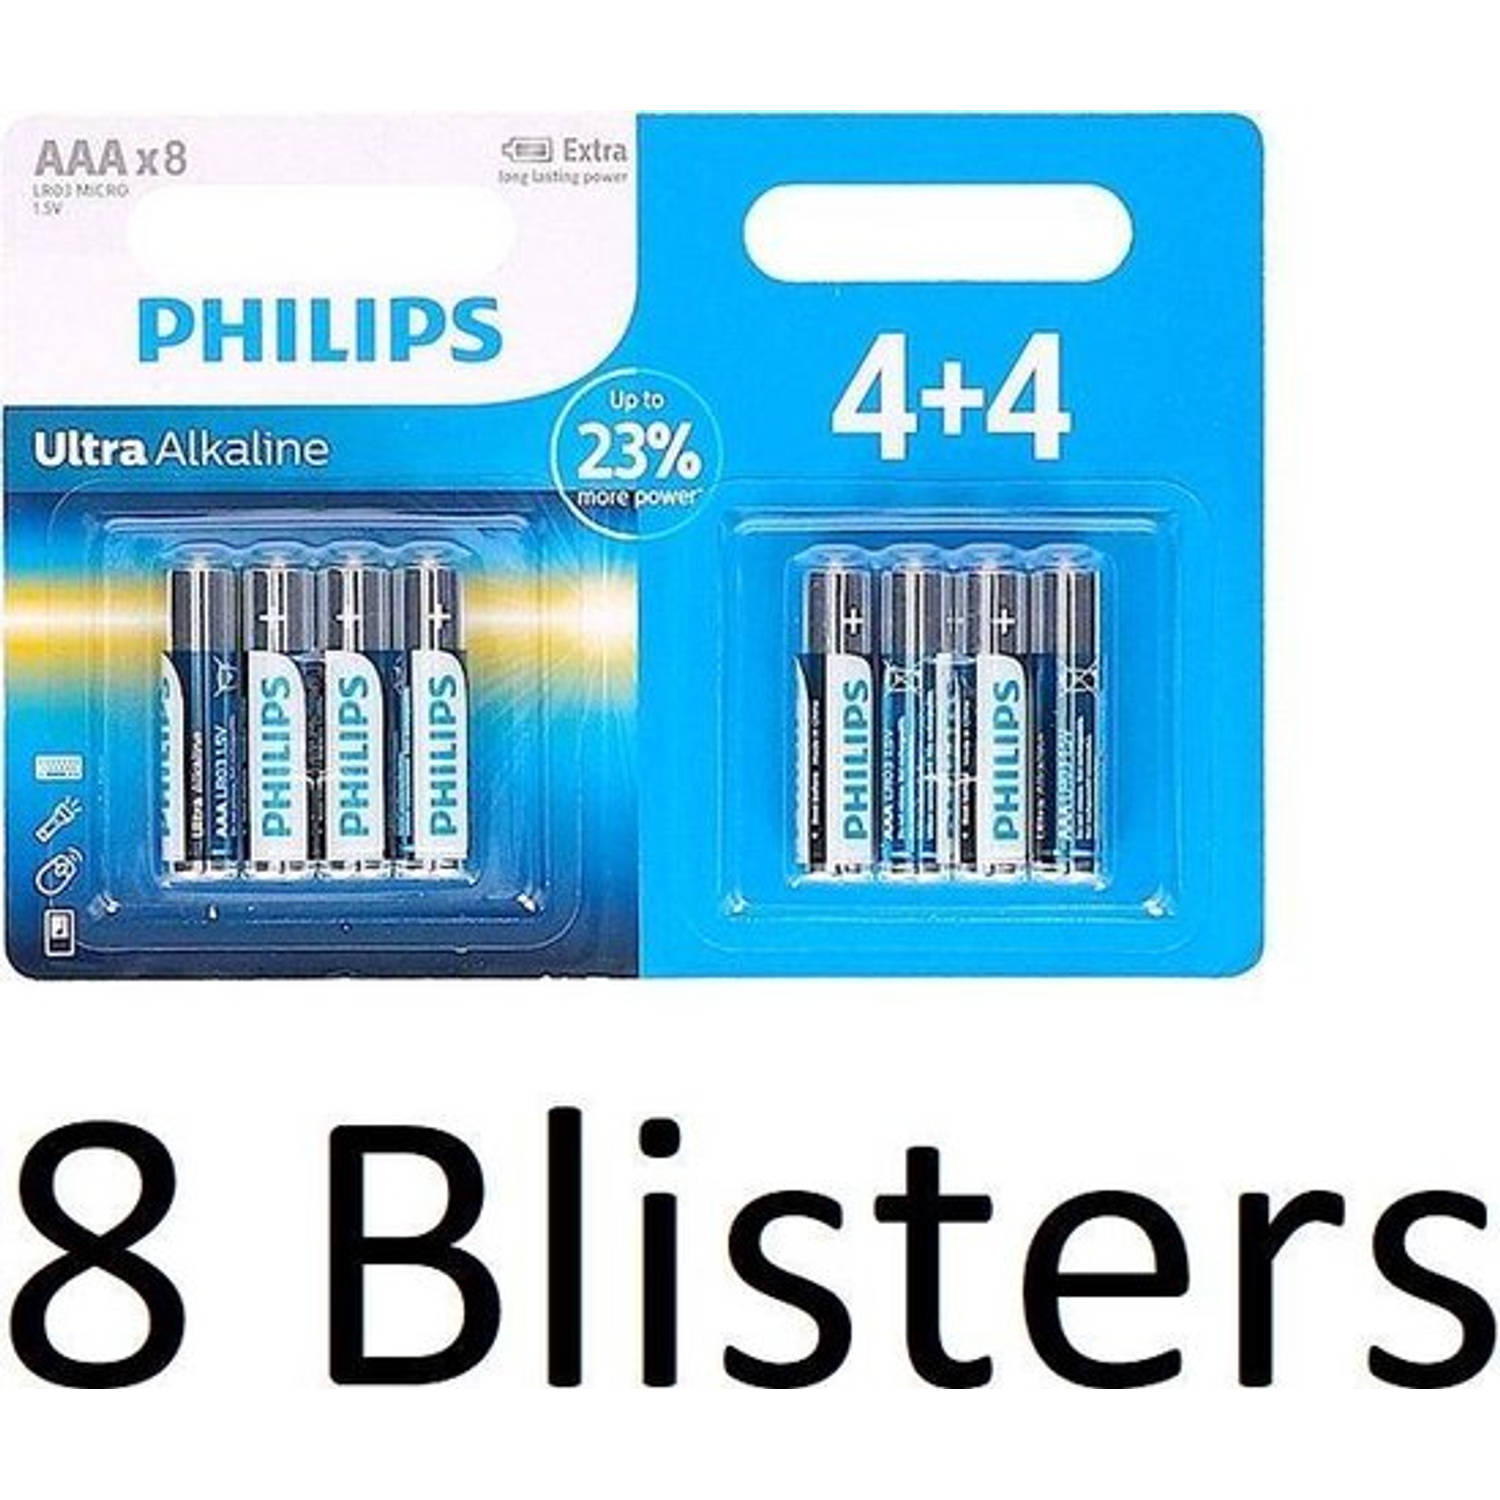 64 Stuks (8 Blisters a 8 st) Philips Ultra Alkaline Lr03/aaa Batterijen 4+4